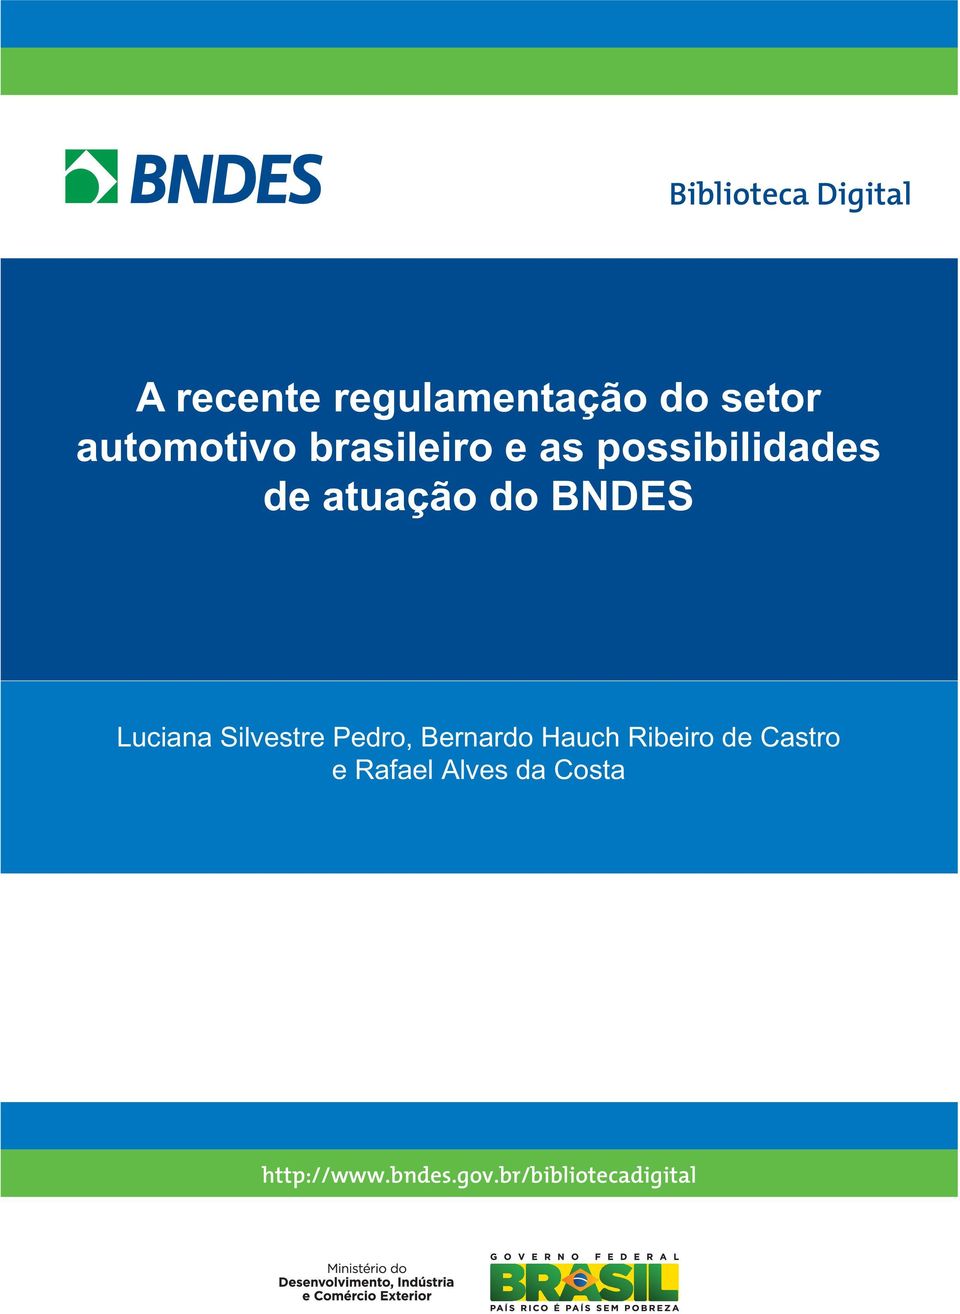 BNDES Luciana Silvestre Pedro, Bernardo Hauch Ribeiro de